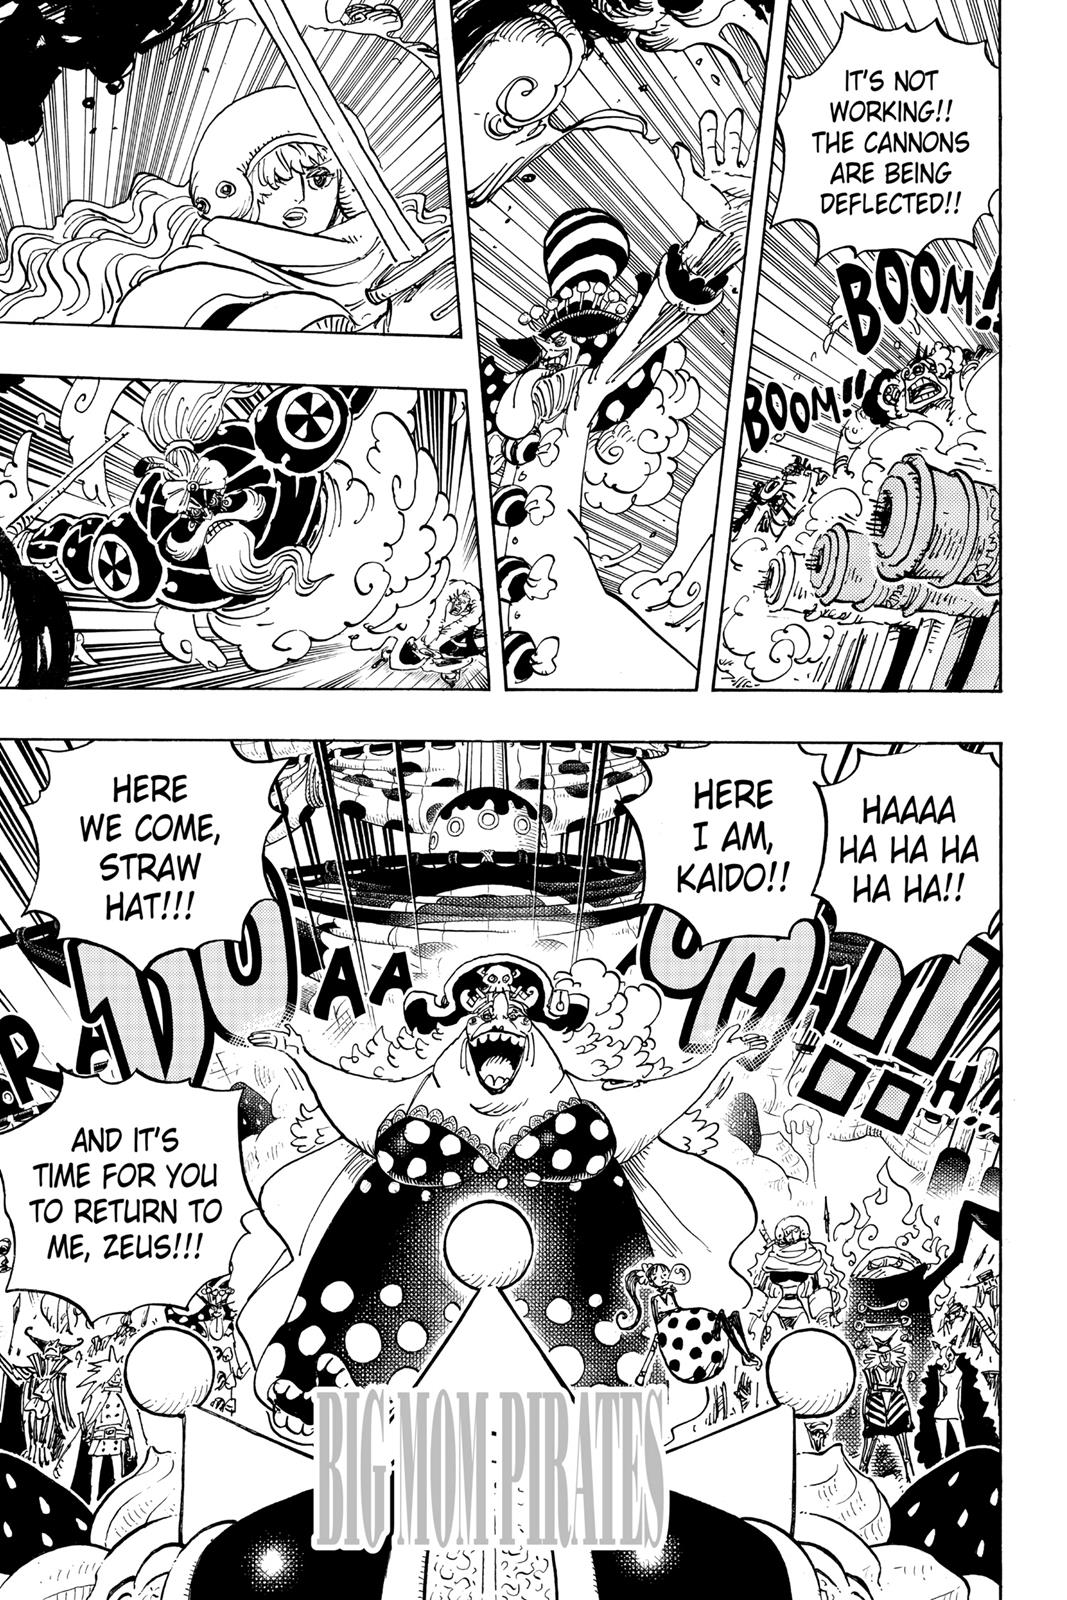 Portal Piece - (AVISO CONTÉM SPOILERS) Como um Três Generais da Doçura,  Katakuri exerce grande autoridade nos Piratas da Big Mom, ficando apenas  atras de sua Mãe. Como Ministro da Farinha, Katakuri